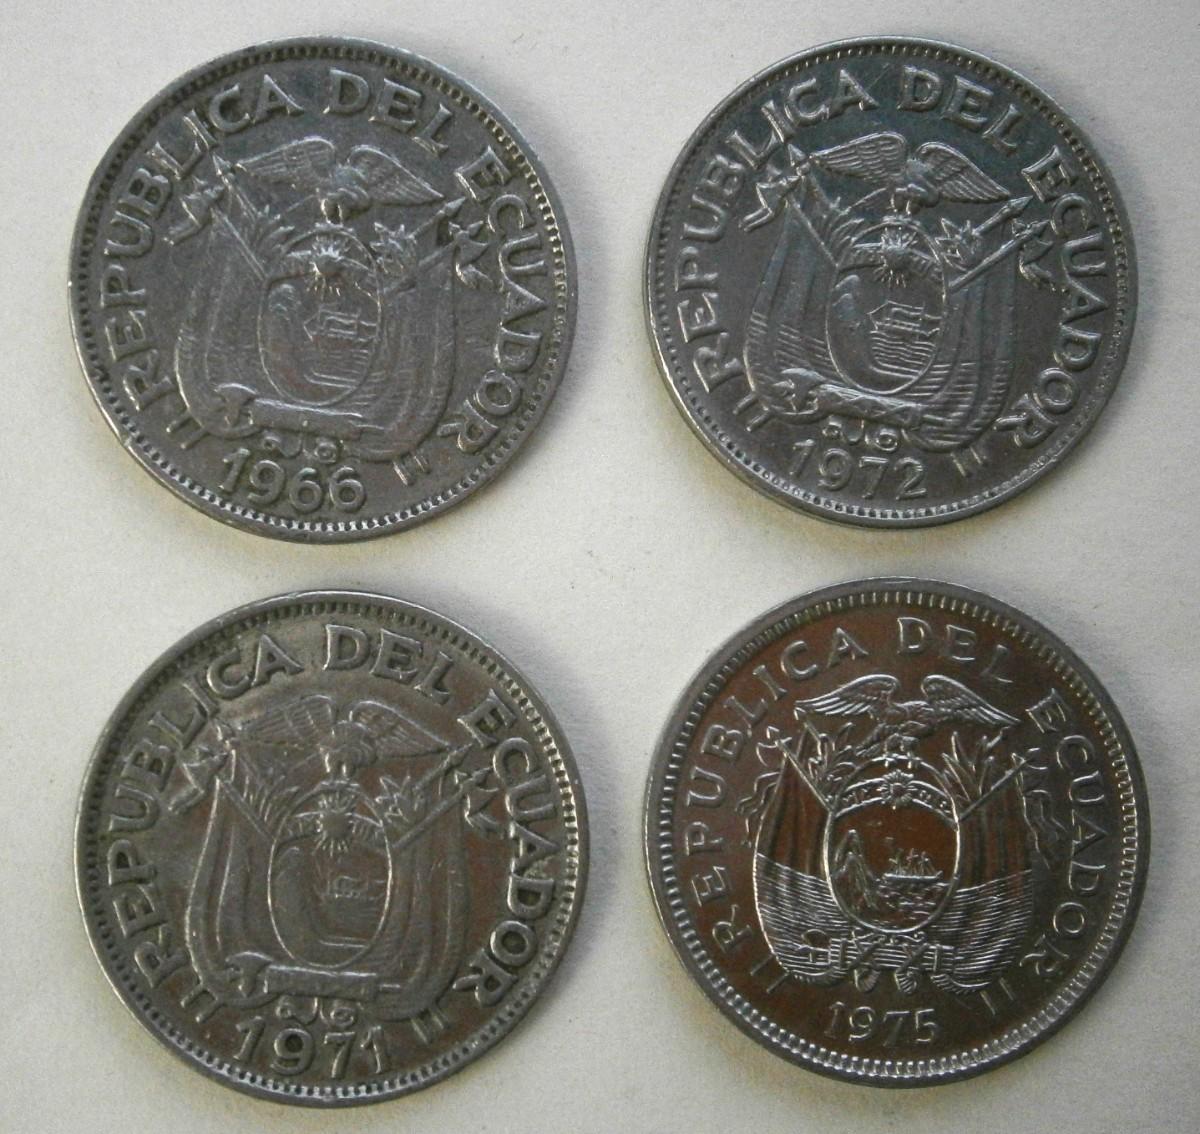 REPUBLICA DEL ECUADOR 1966, 1971, 1972 & 1975 20 Centavos Coins ...